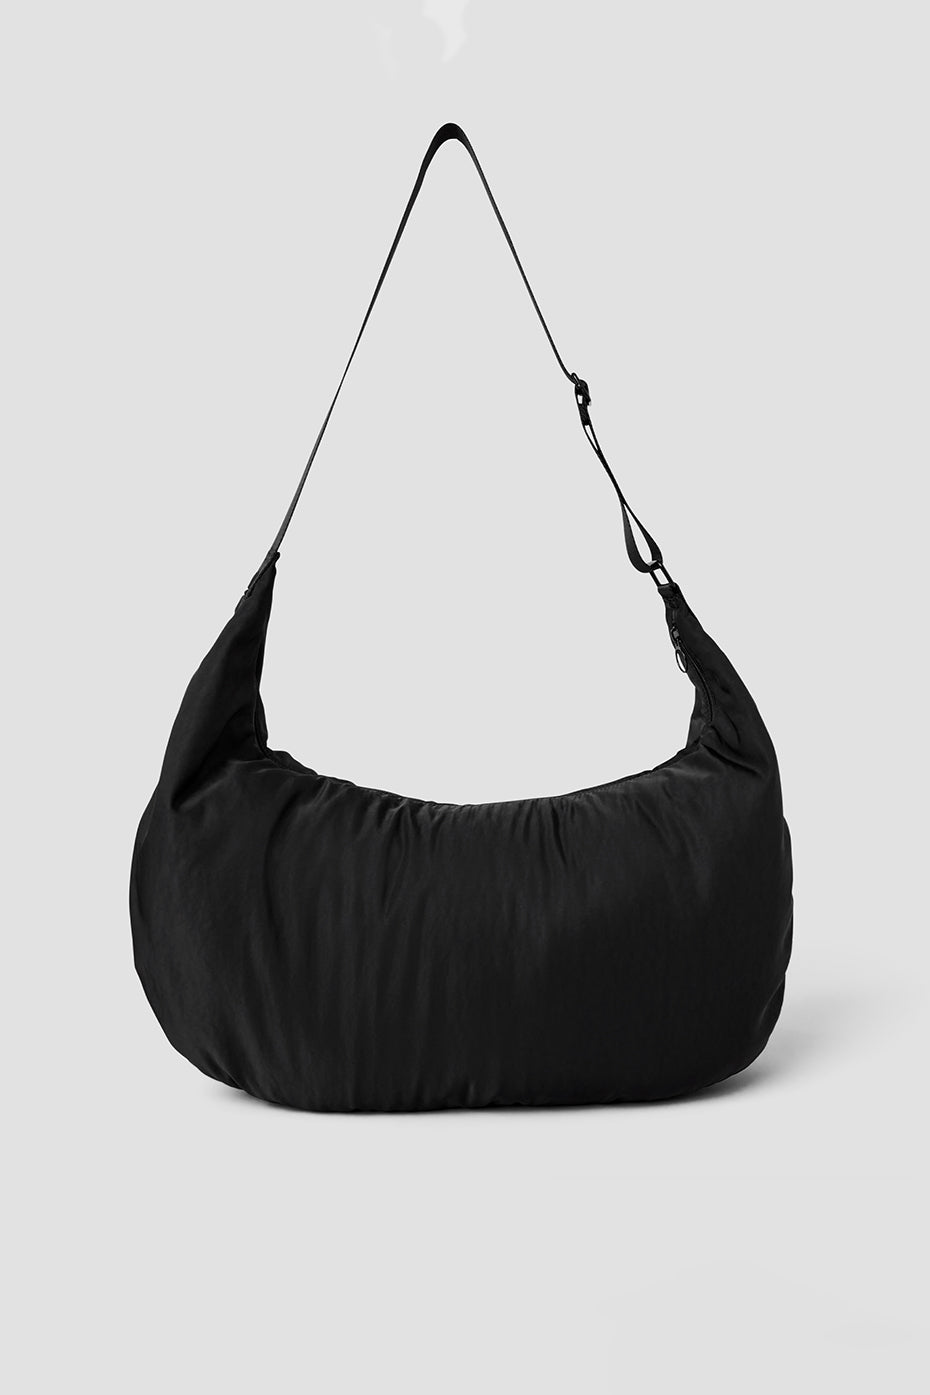 Om The Go Gym Sling Bag - Black - Black / One Size